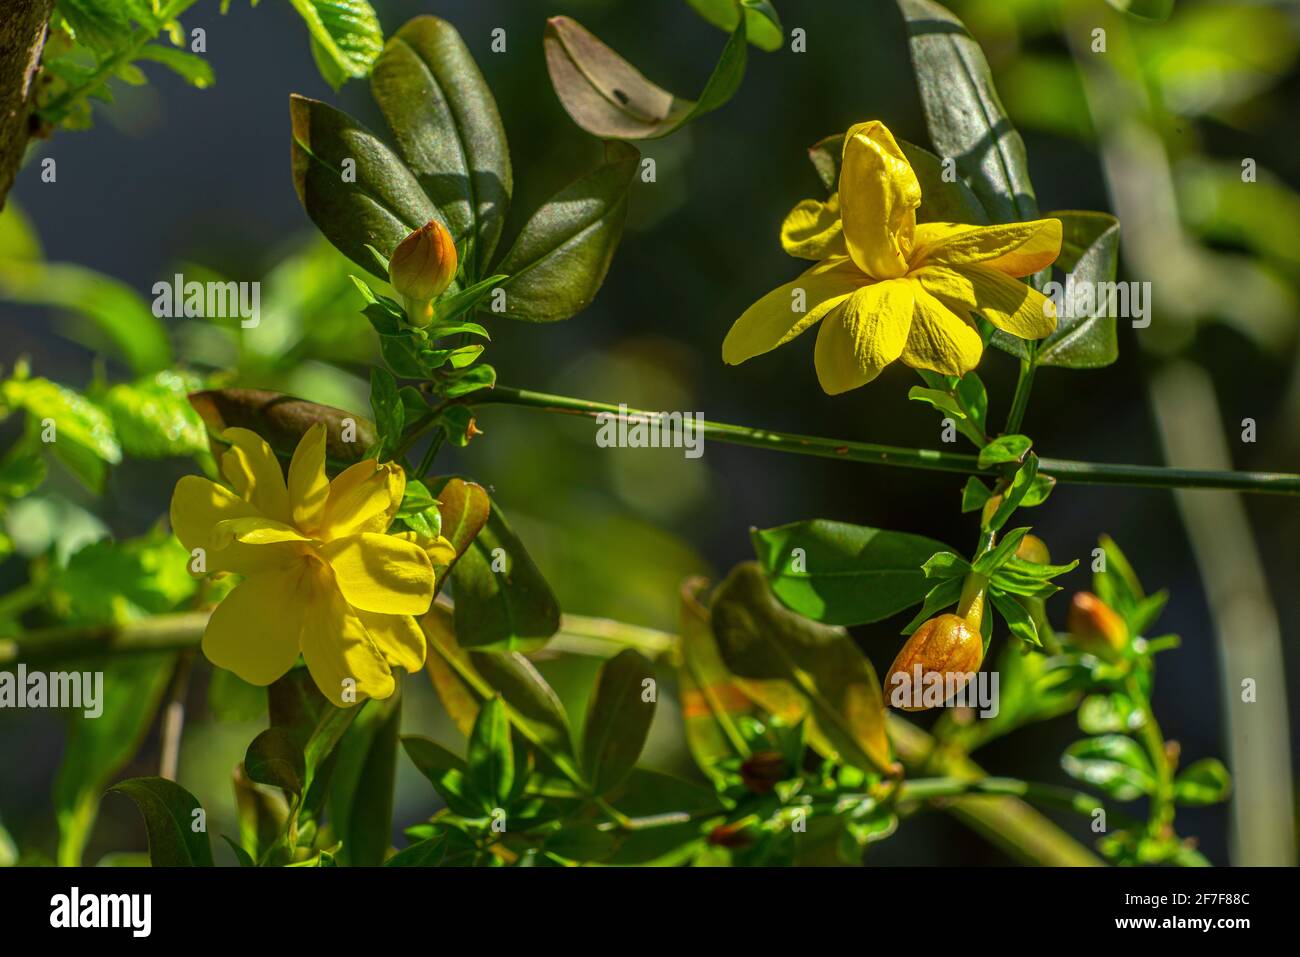 Fiori e gemme della pianta di gelsomino primrosa, Jasminum mesnyi Hance, illuminato da un sole primaverile. Abruzzo, Italia, Europa Foto Stock